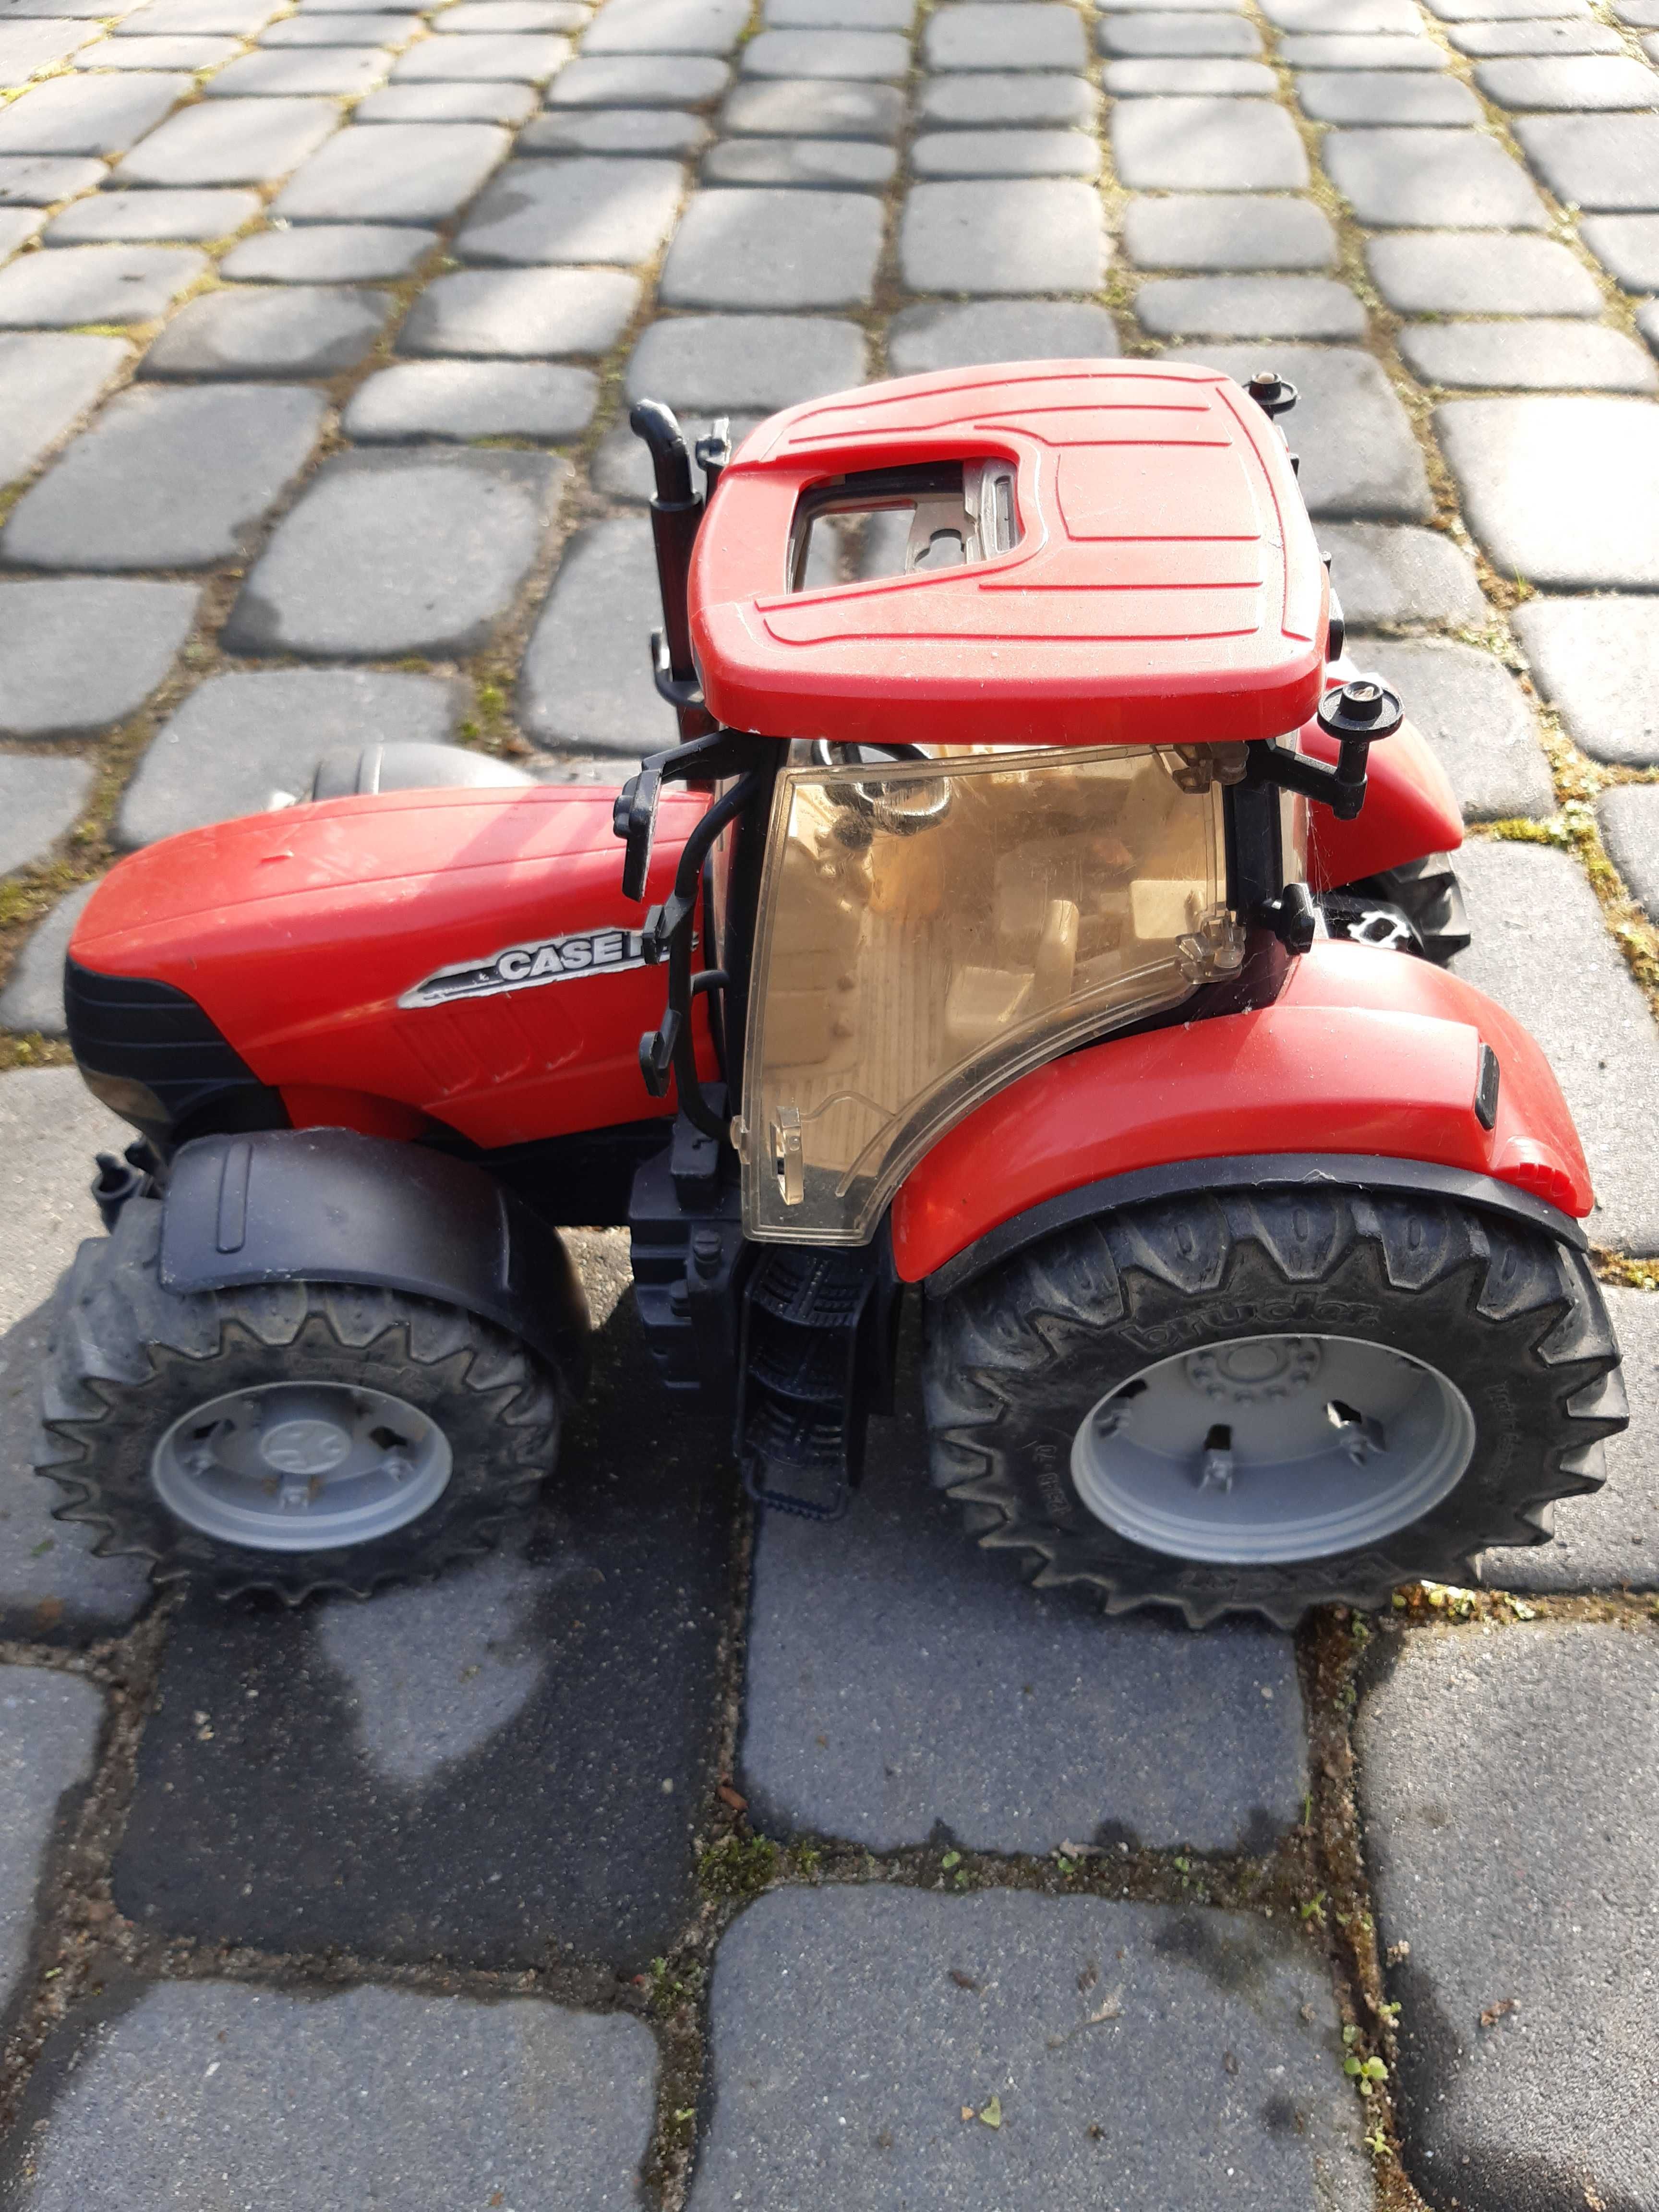 zabawkowy traktor ciągnik czerwony, Bruder, made in Germany 35cm dł